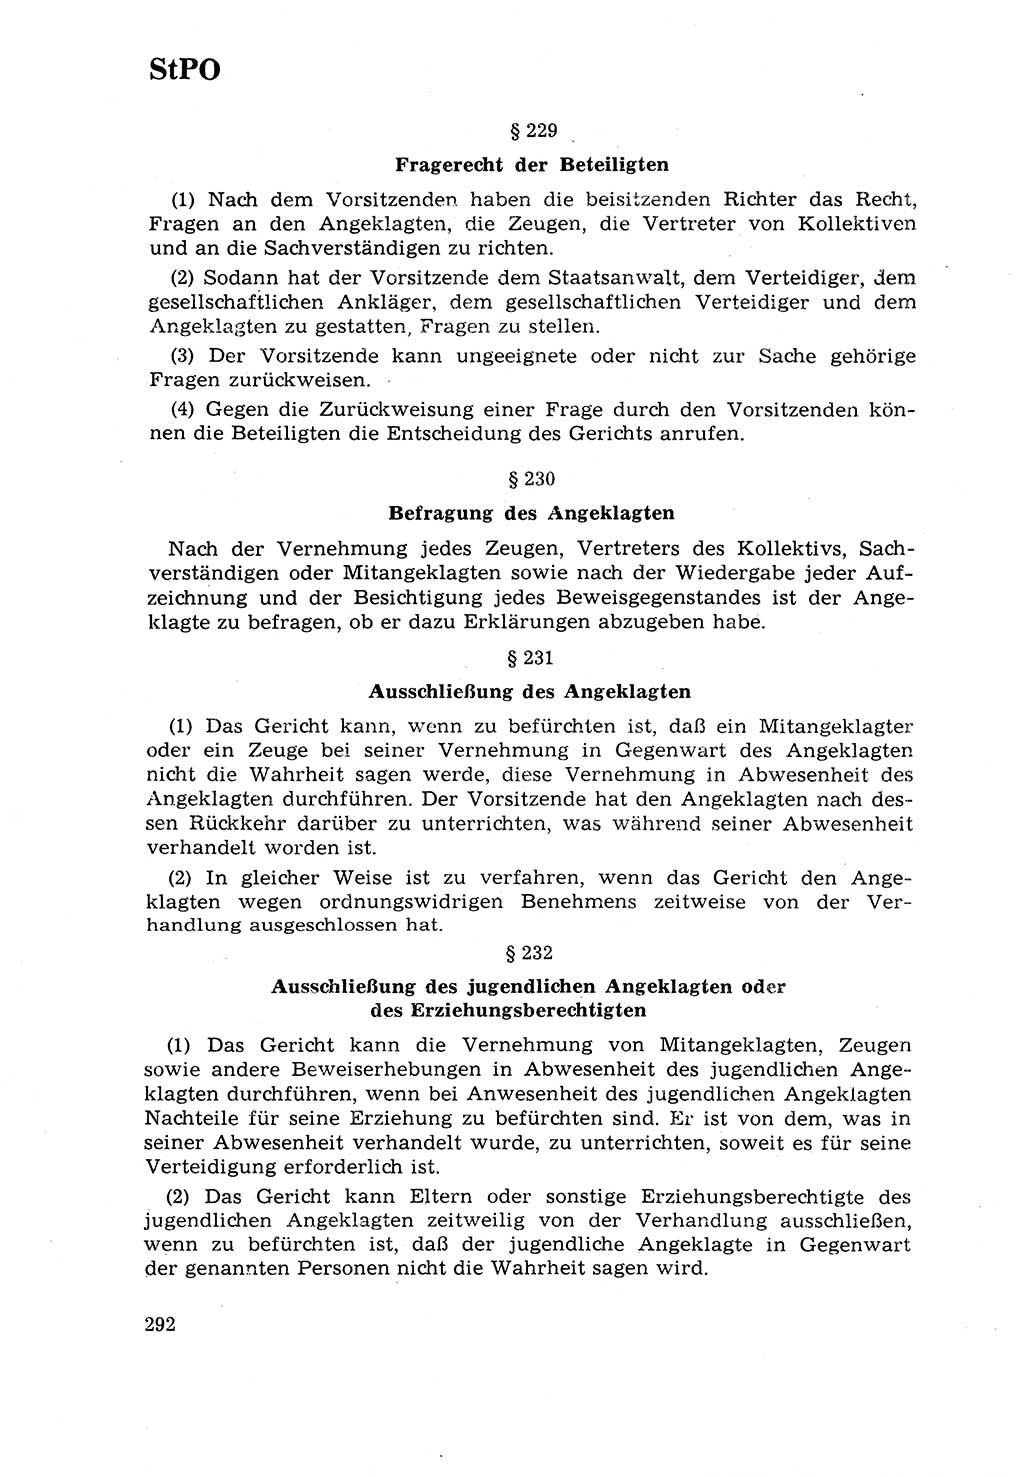 Strafrecht [Deutsche Demokratische Republik (DDR)] 1968, Seite 292 (Strafr. DDR 1968, S. 292)